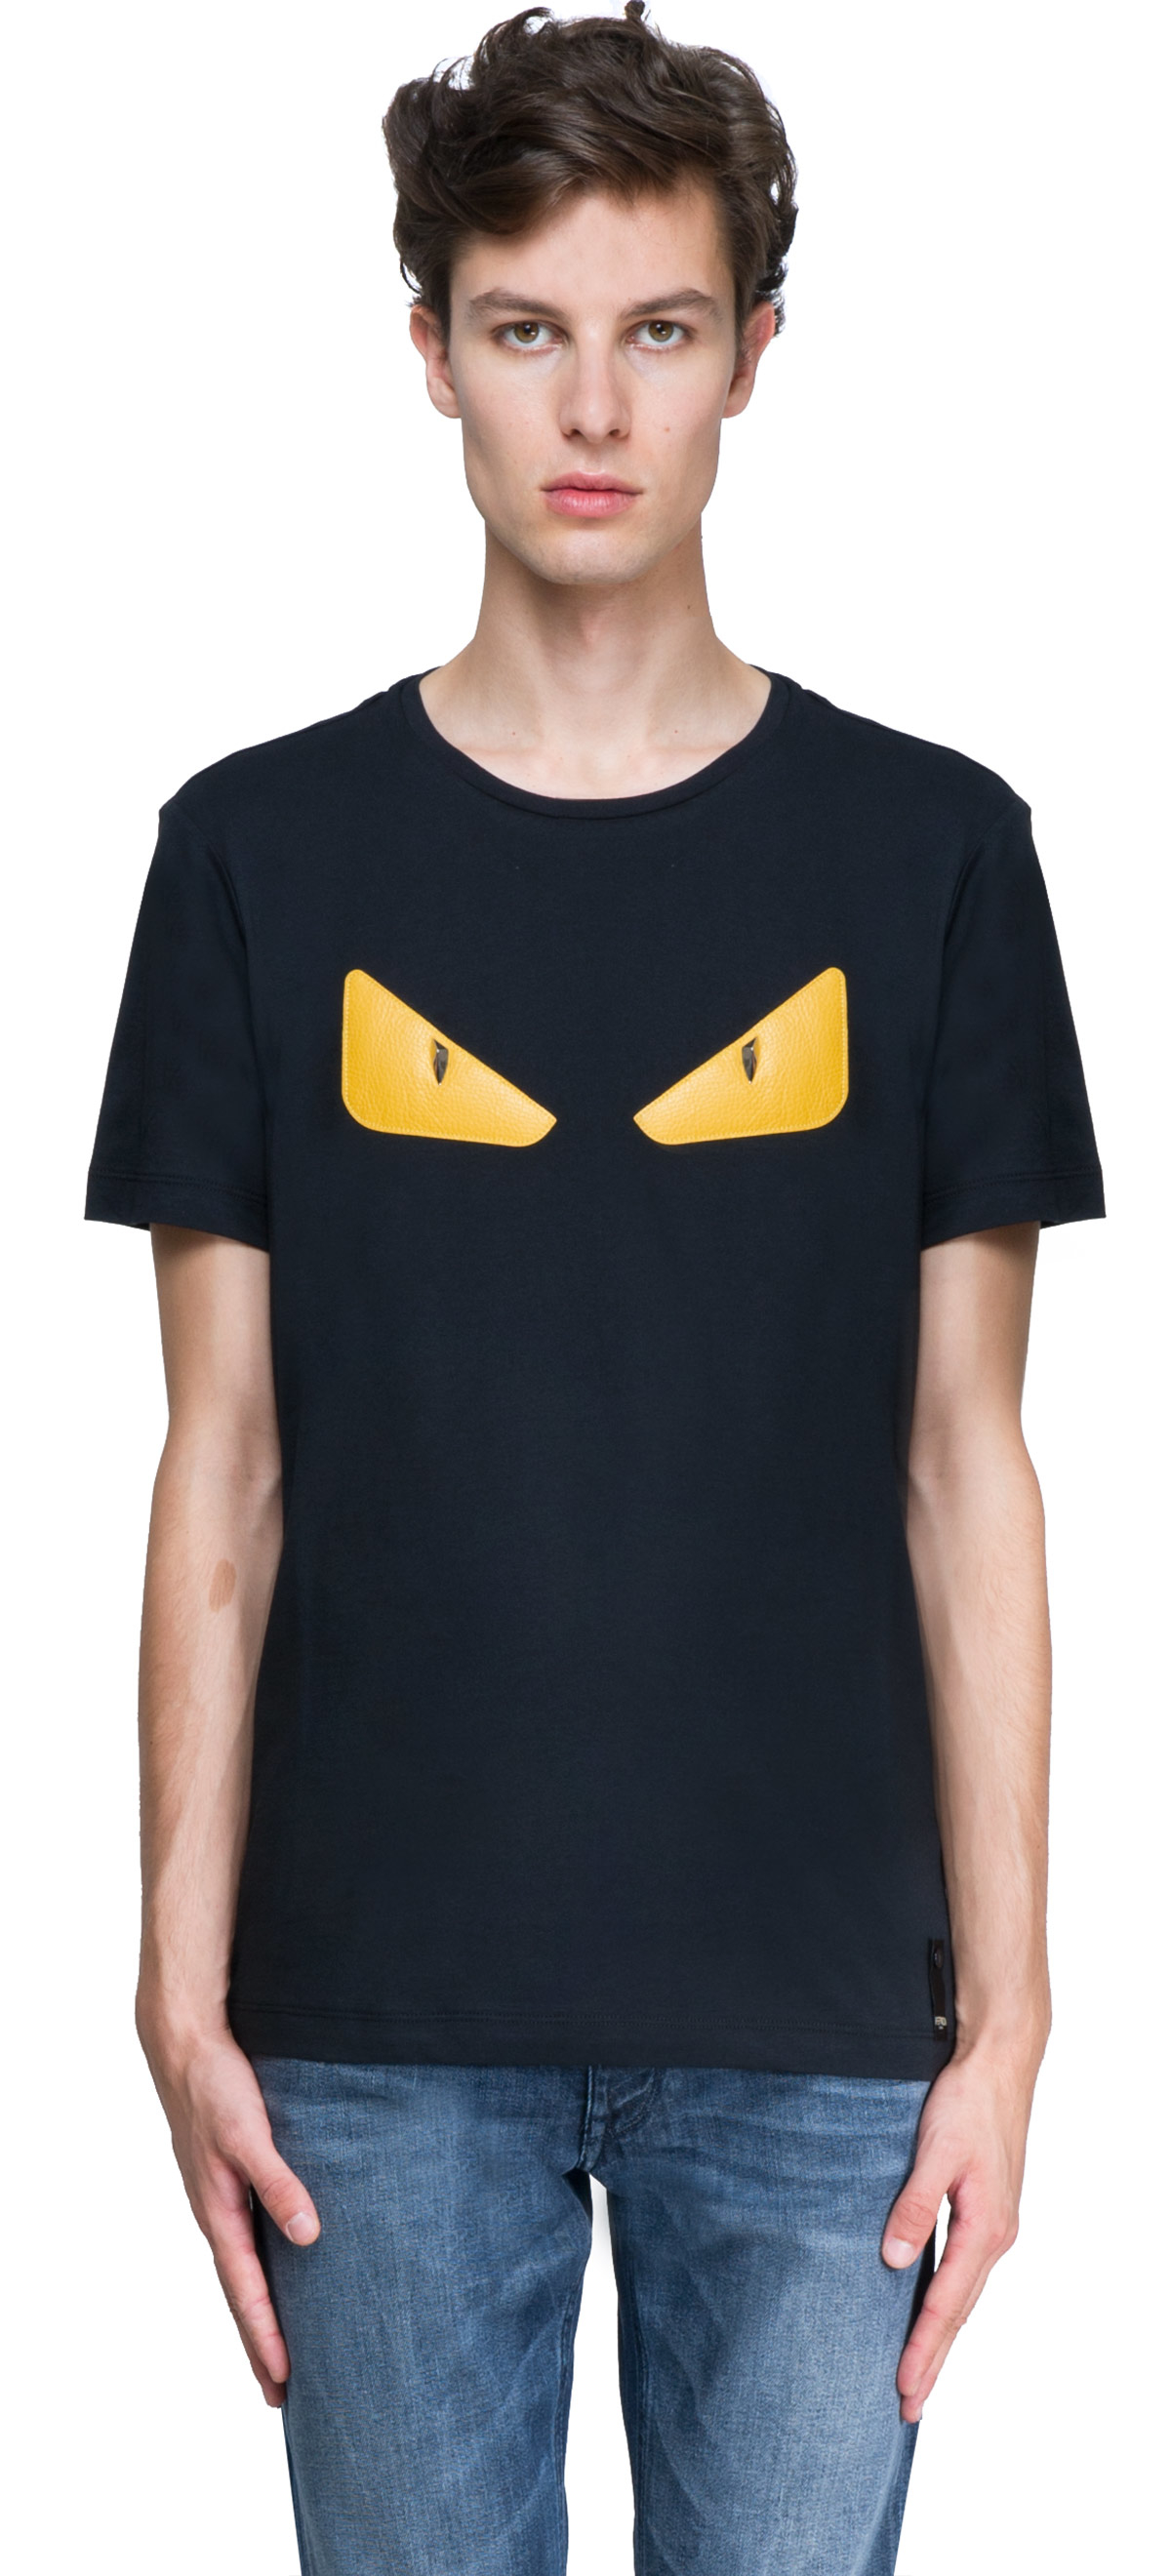 Fendi Leather Monster T-shirt in Black for Men - Lyst